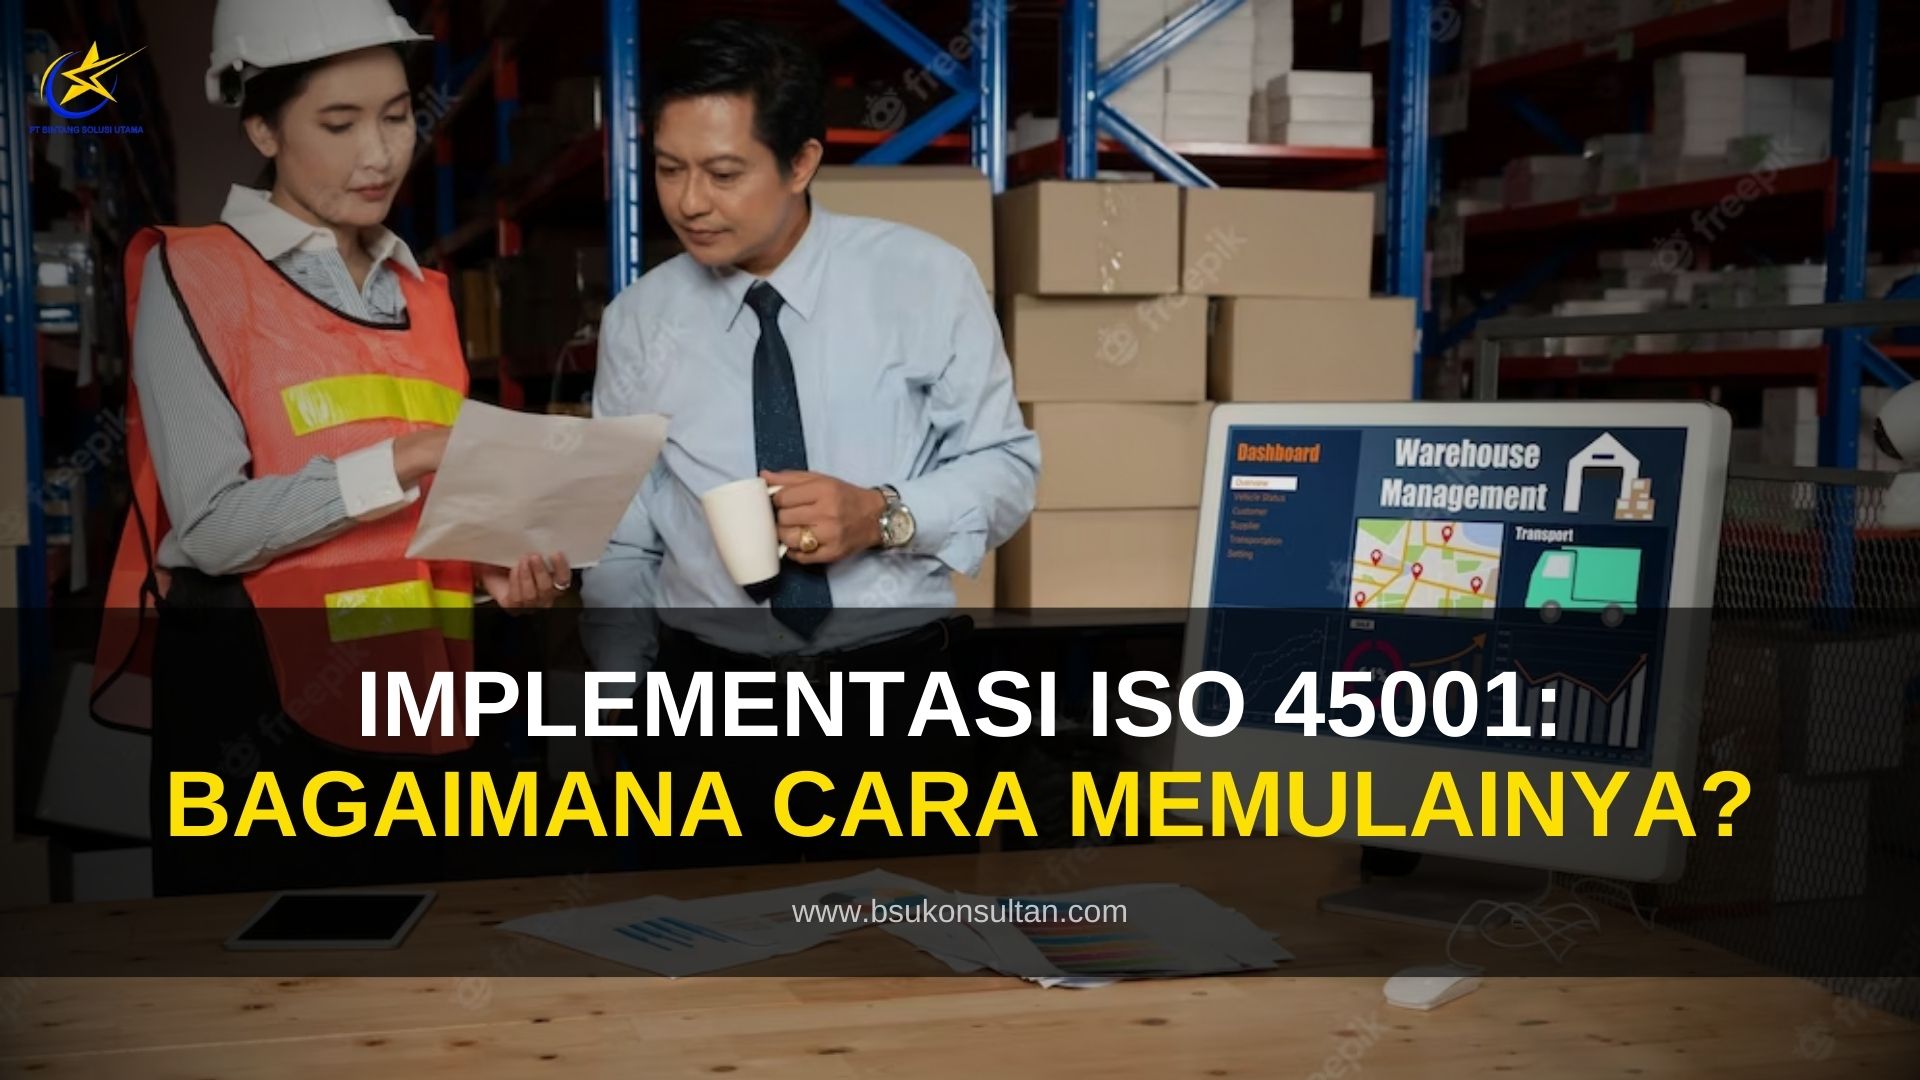 Implementasi ISO 45001: Bagaimana Cara Memulainya?